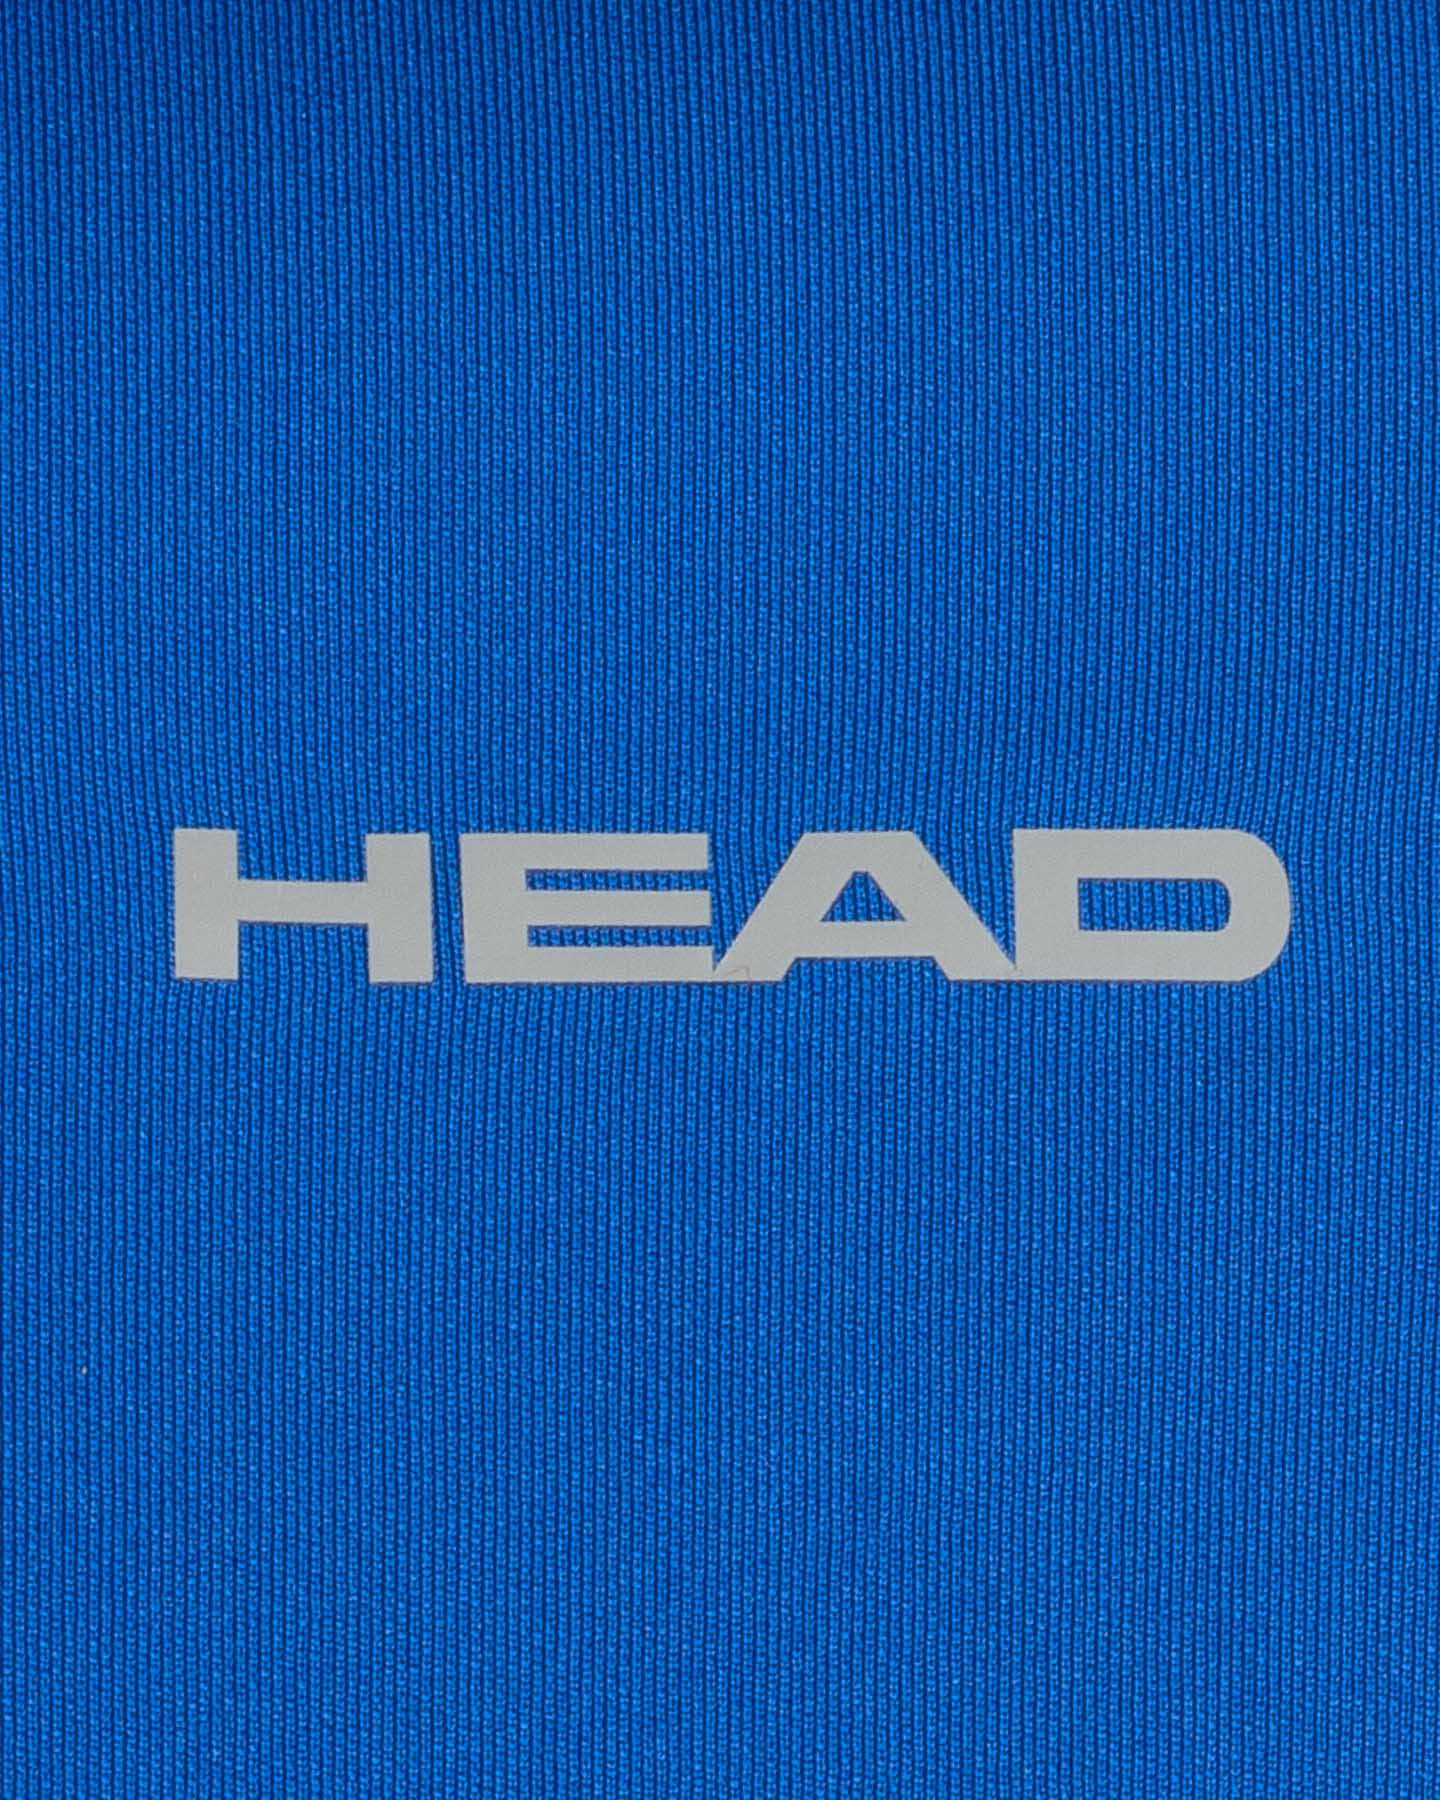  Polo tennis HEAD TECH CLUB M S5304060|RO|S scatto 2